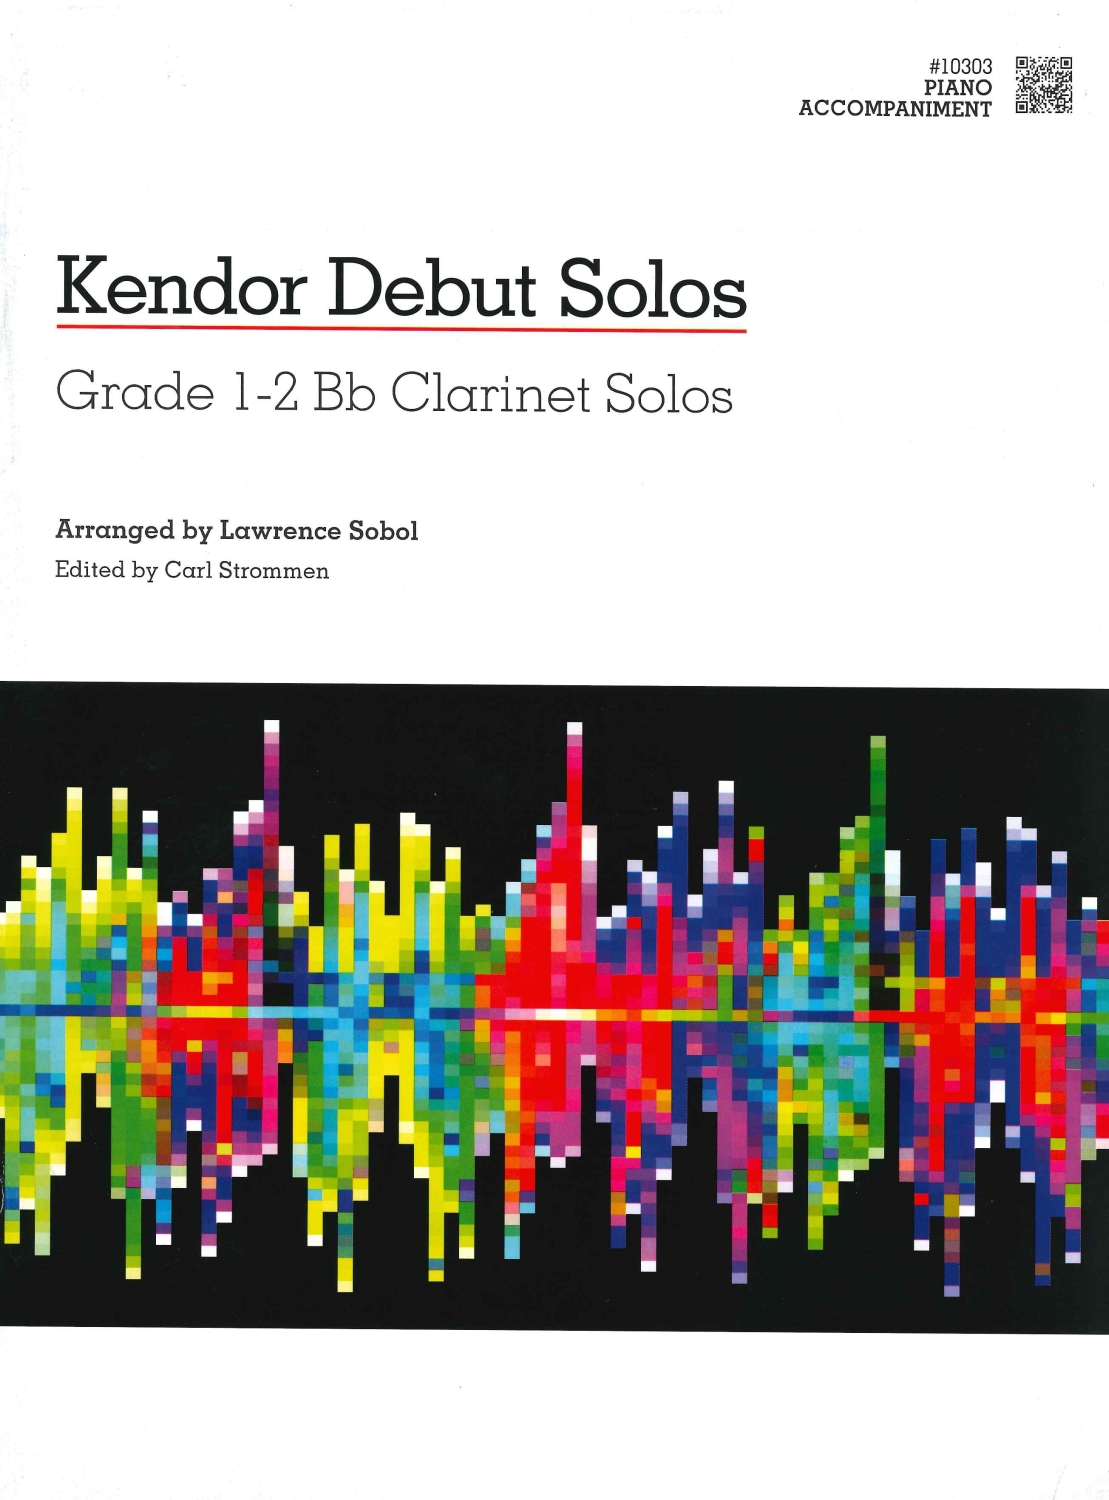 kendor-debut-solos-clr-pno-_pnoacc_-_0001.JPG